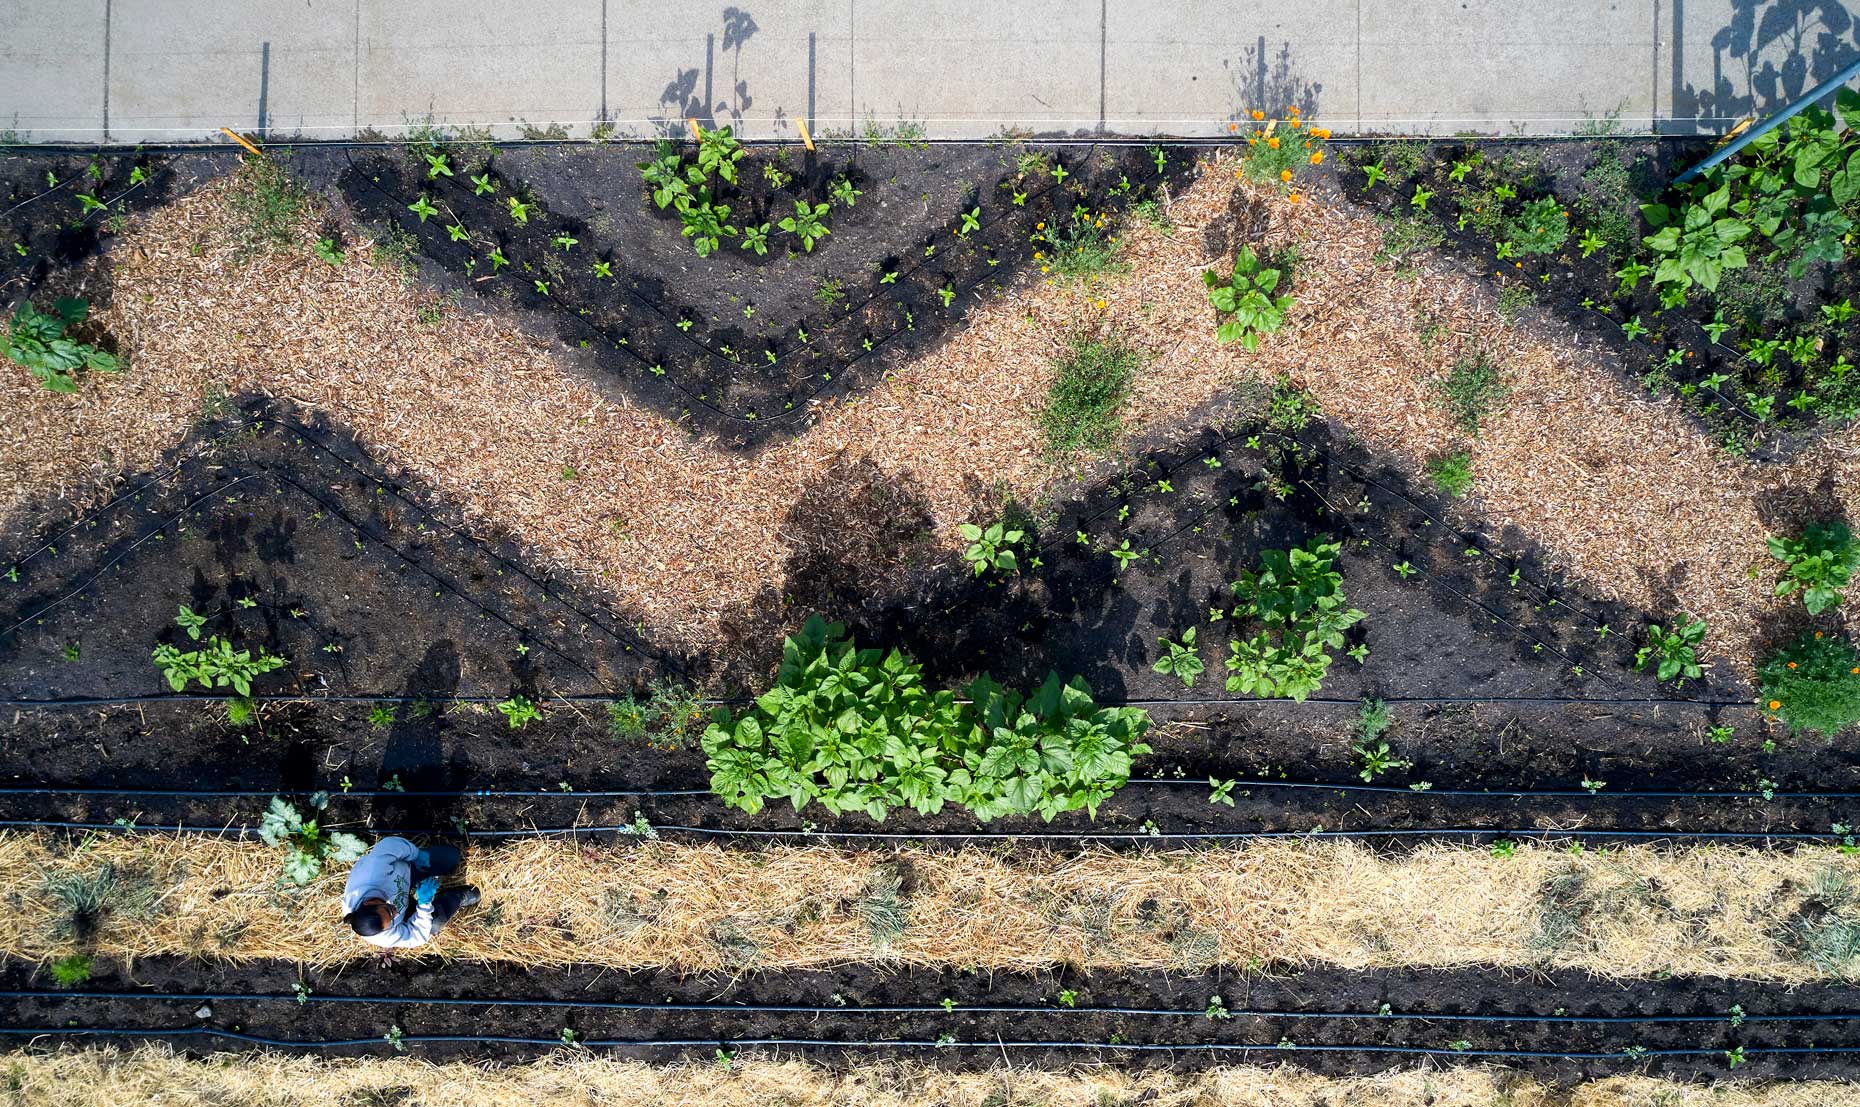 Drone View of Urban Farm Design